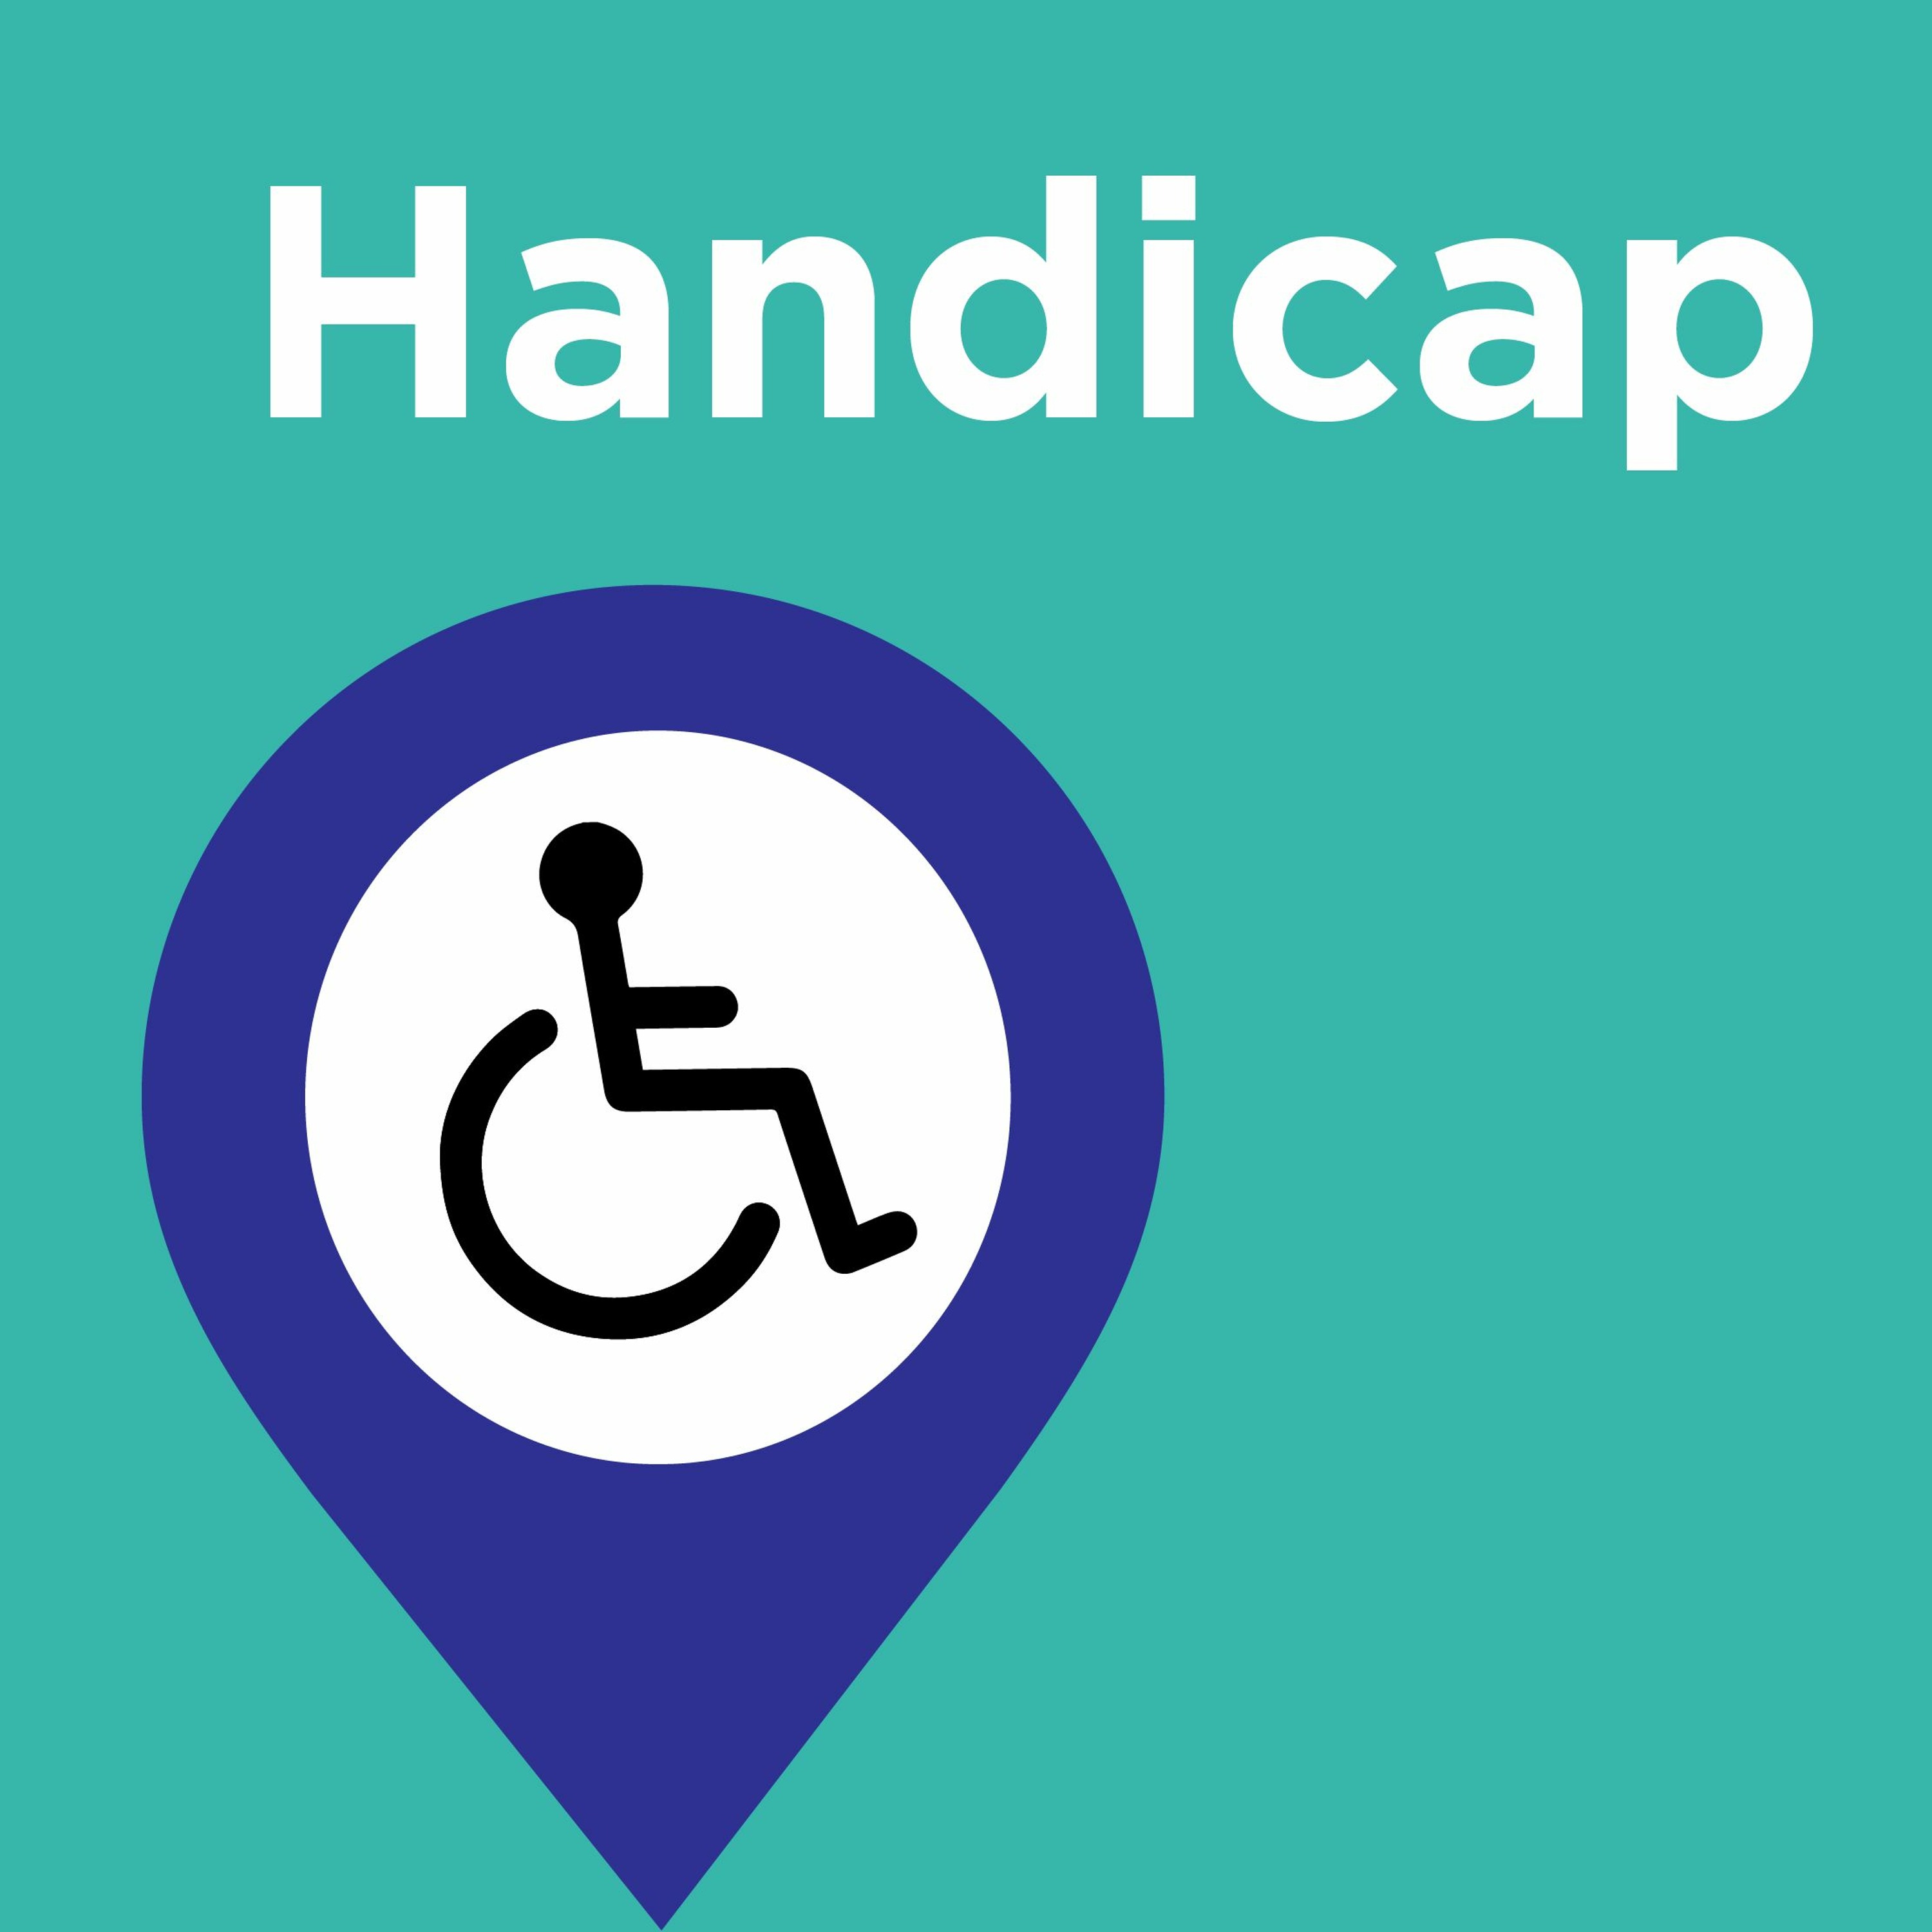 Programme - Handicap